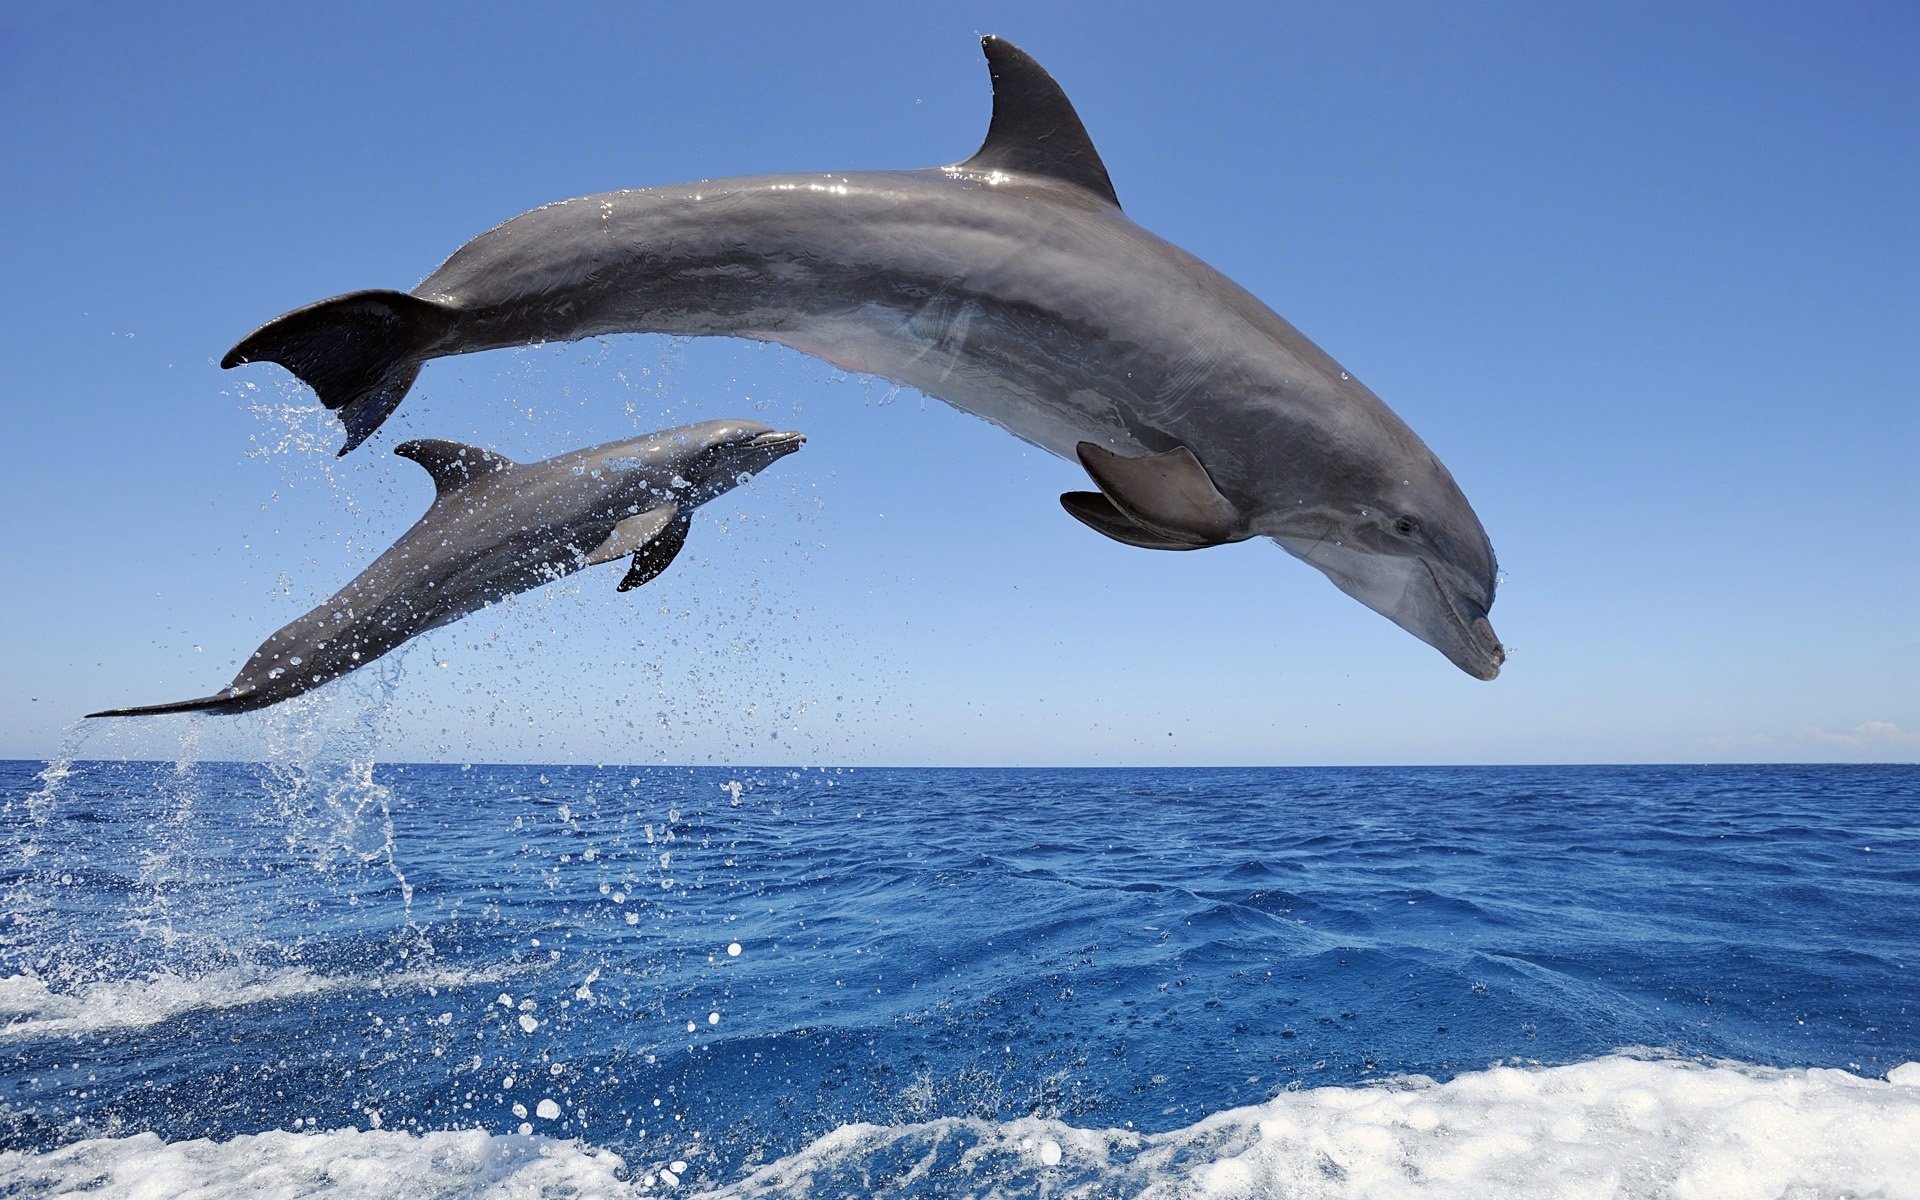 carta da parati delfin,delfino,delfino tursiope,delfino di tursiope comune,mammifero marino,delfino comune dal becco corto